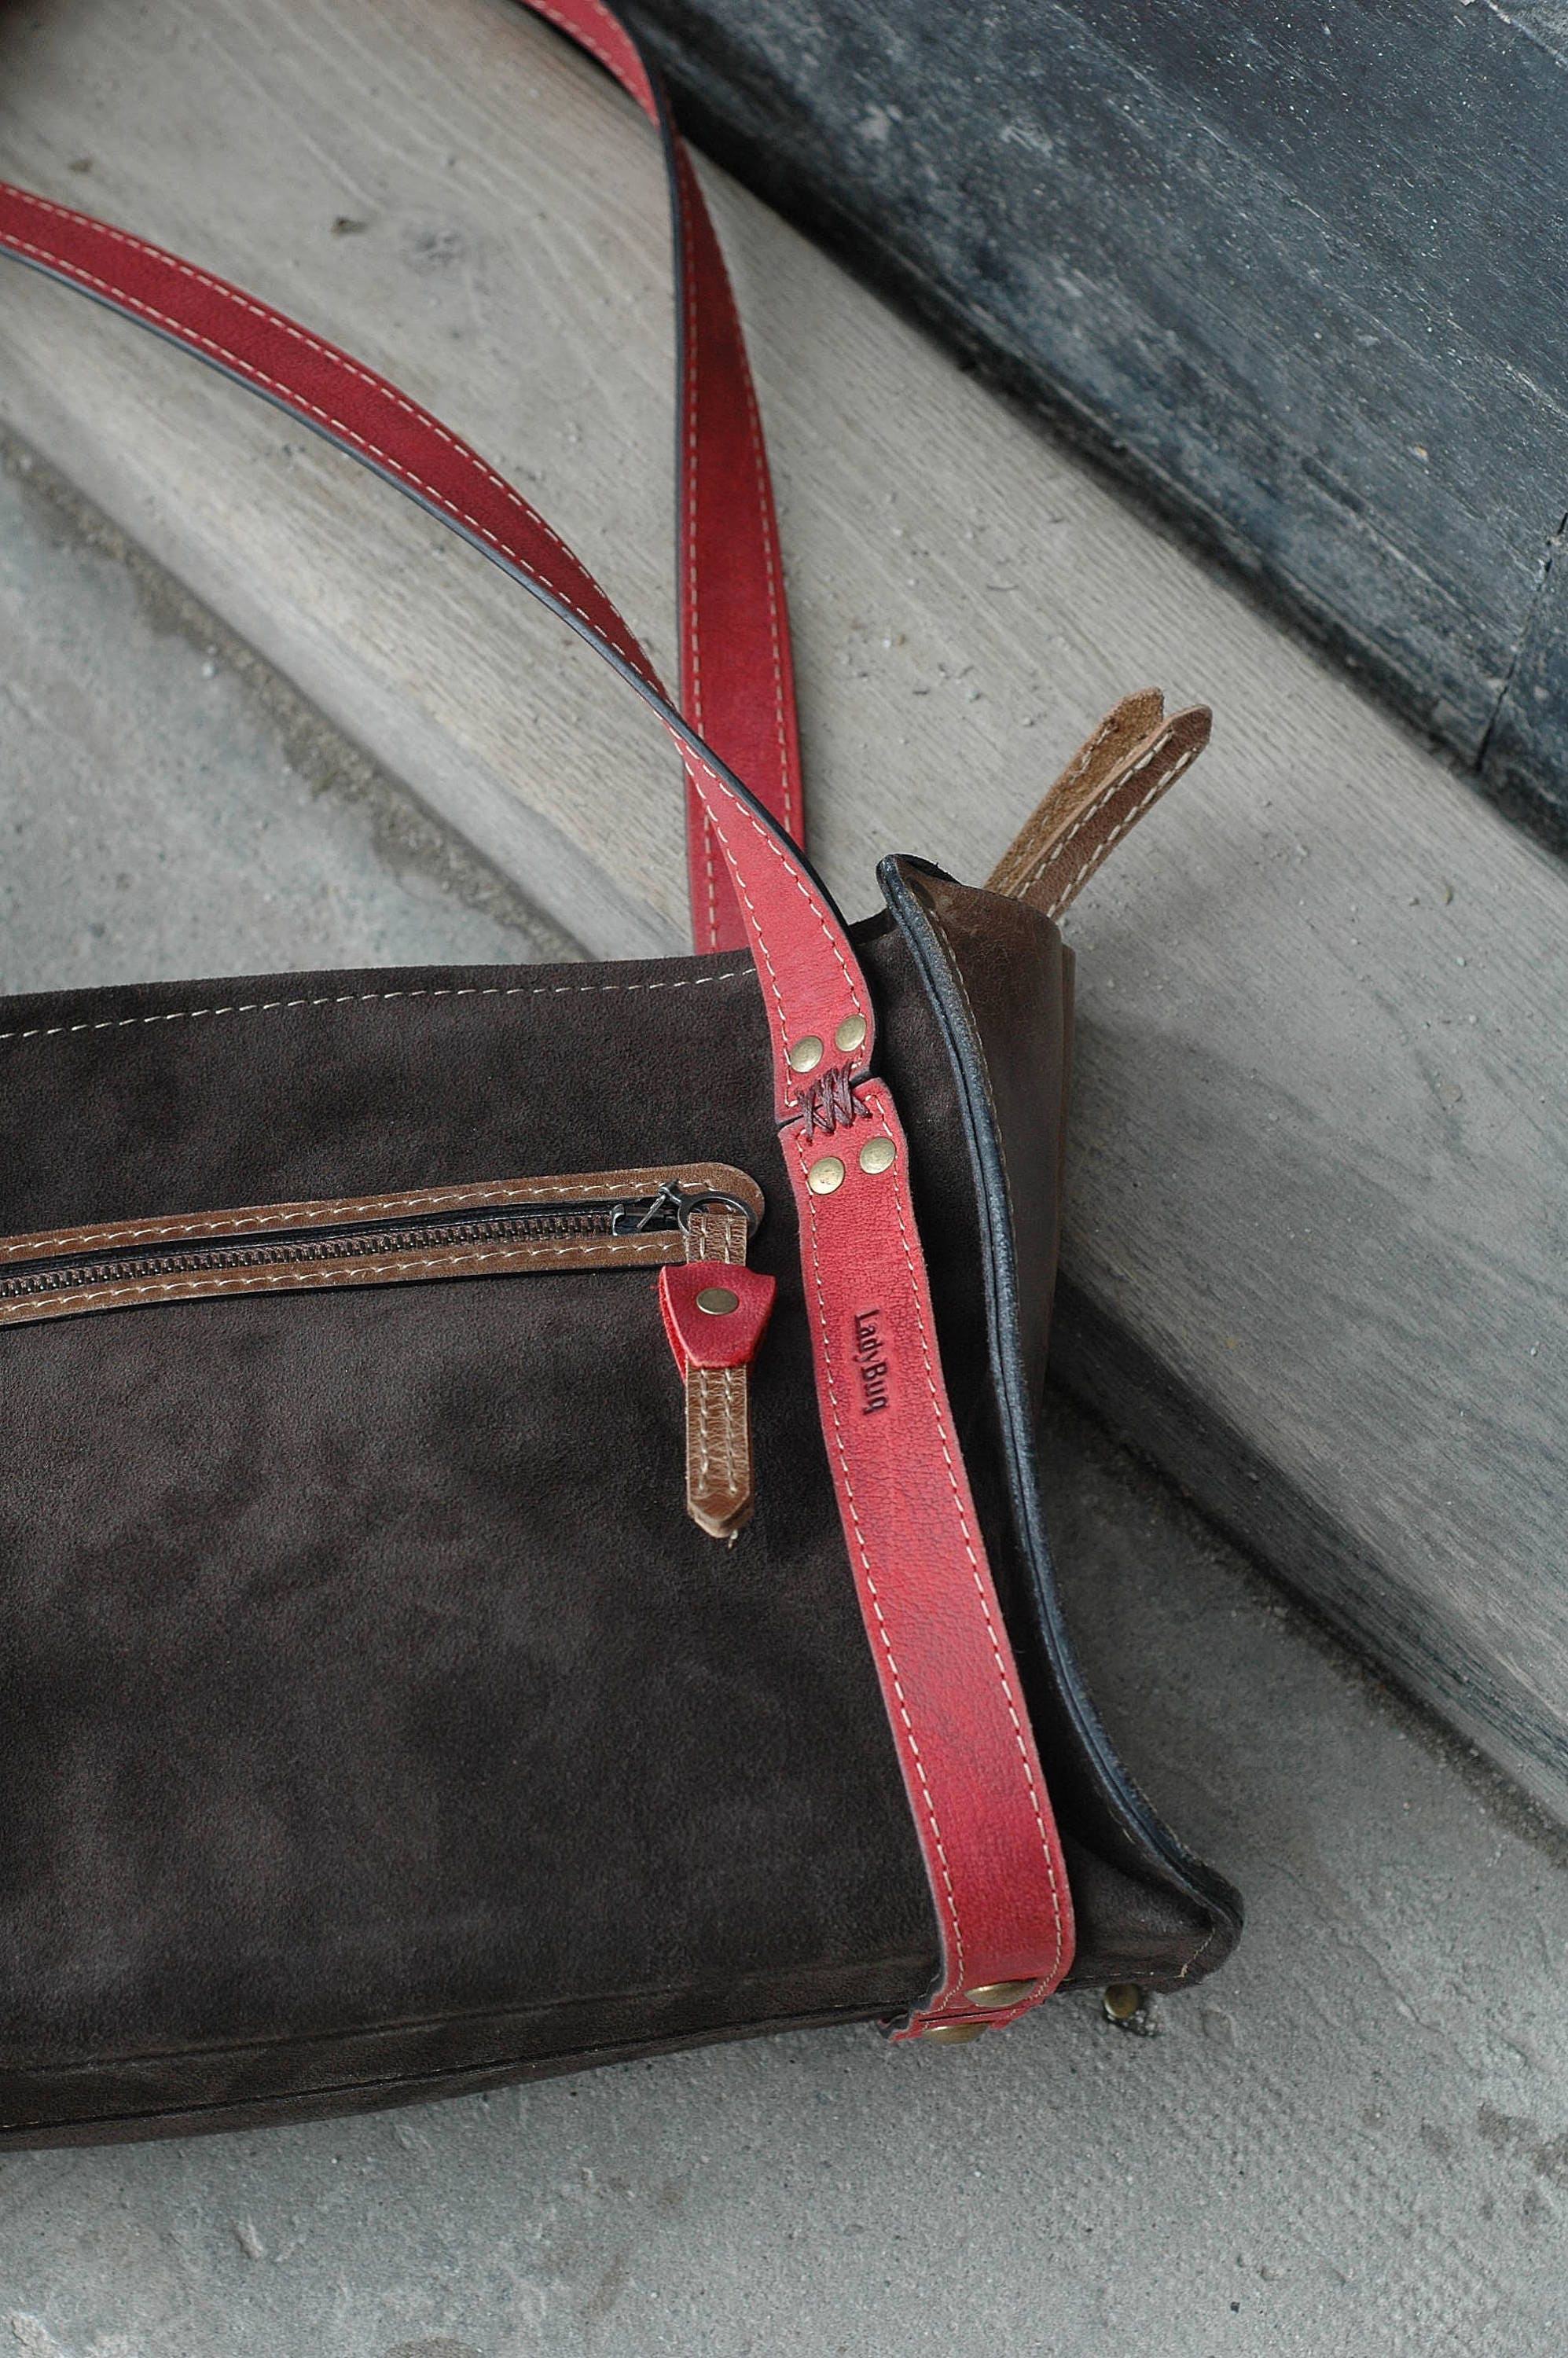 Vintage original purse leather bag shoulder handbag ladybuq | Etsy